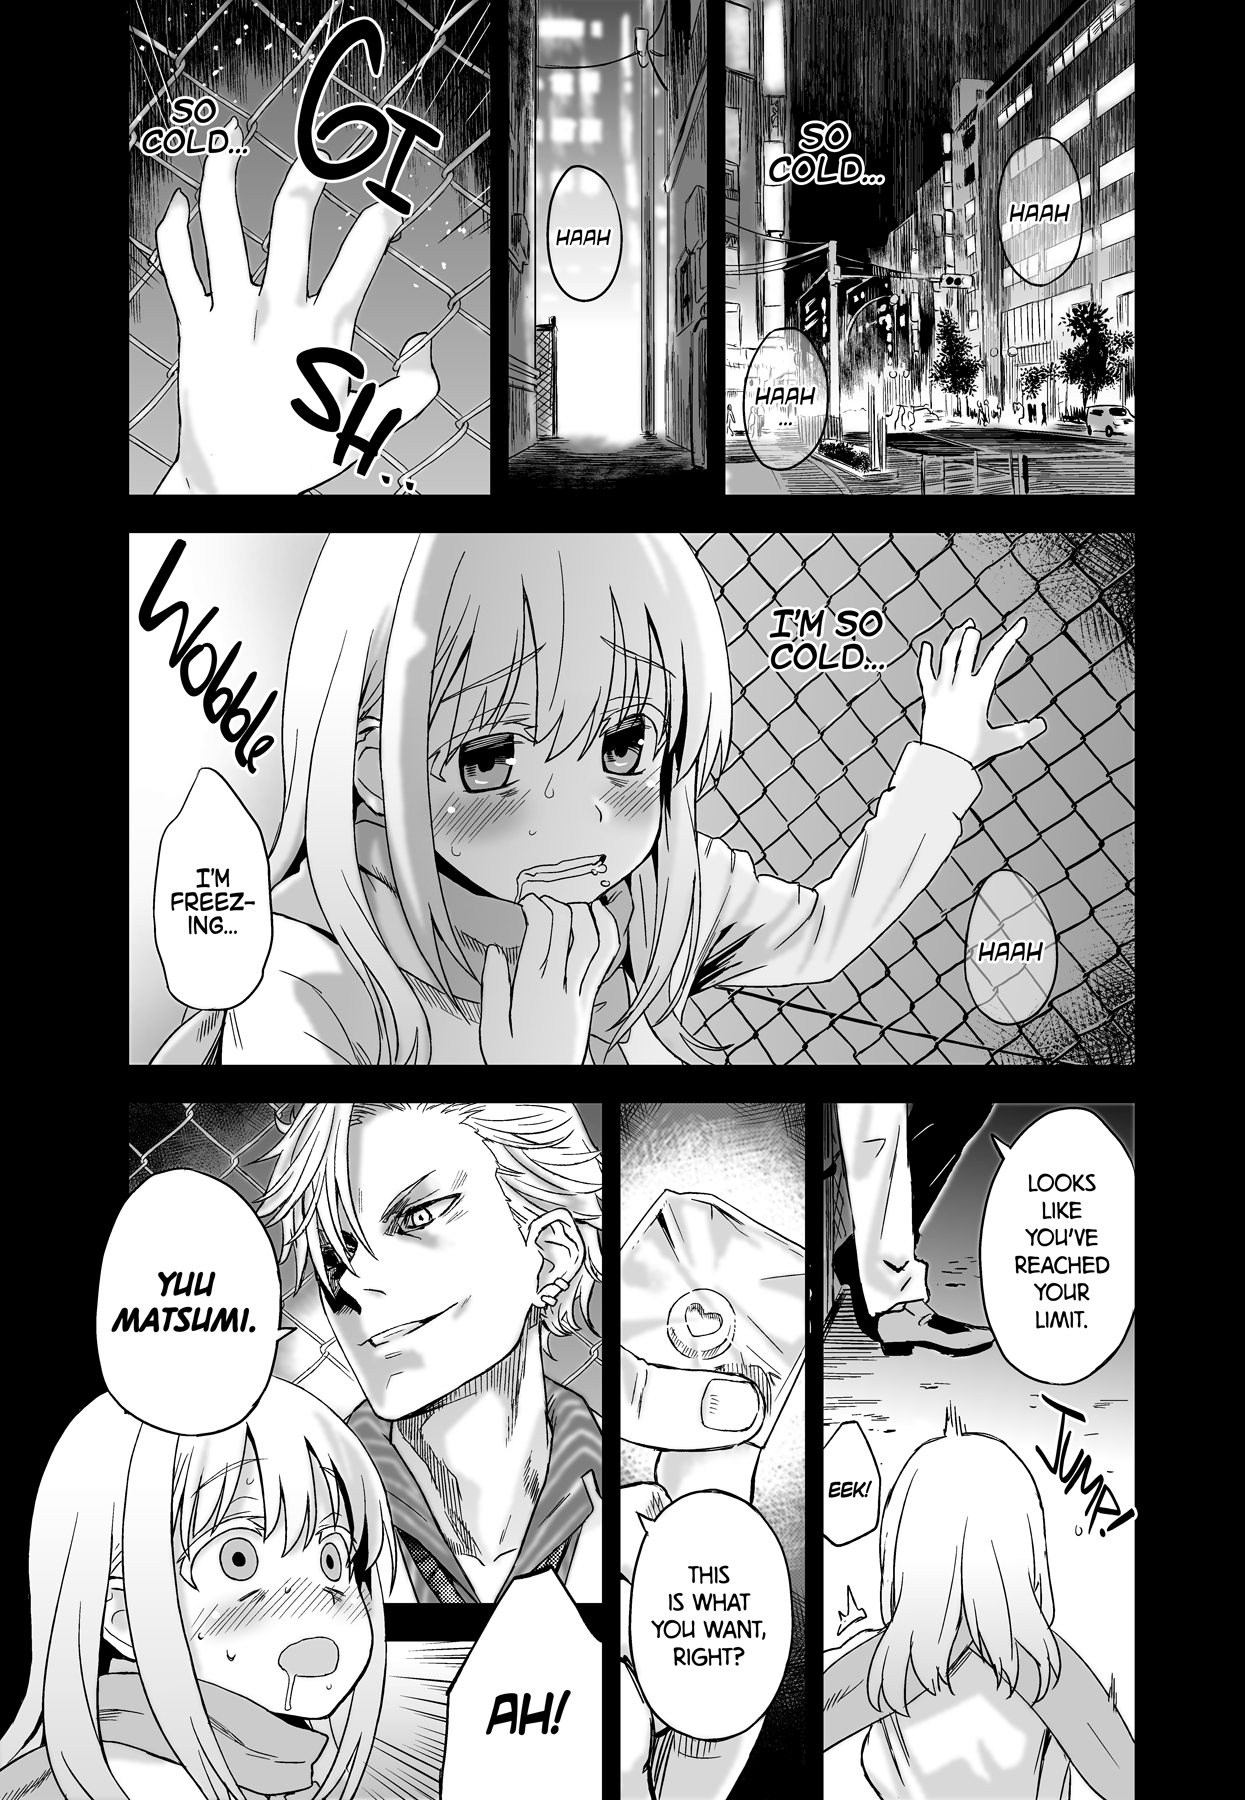 Victim Girls 13 - DRAGON SLAYER hentai manga picture 3